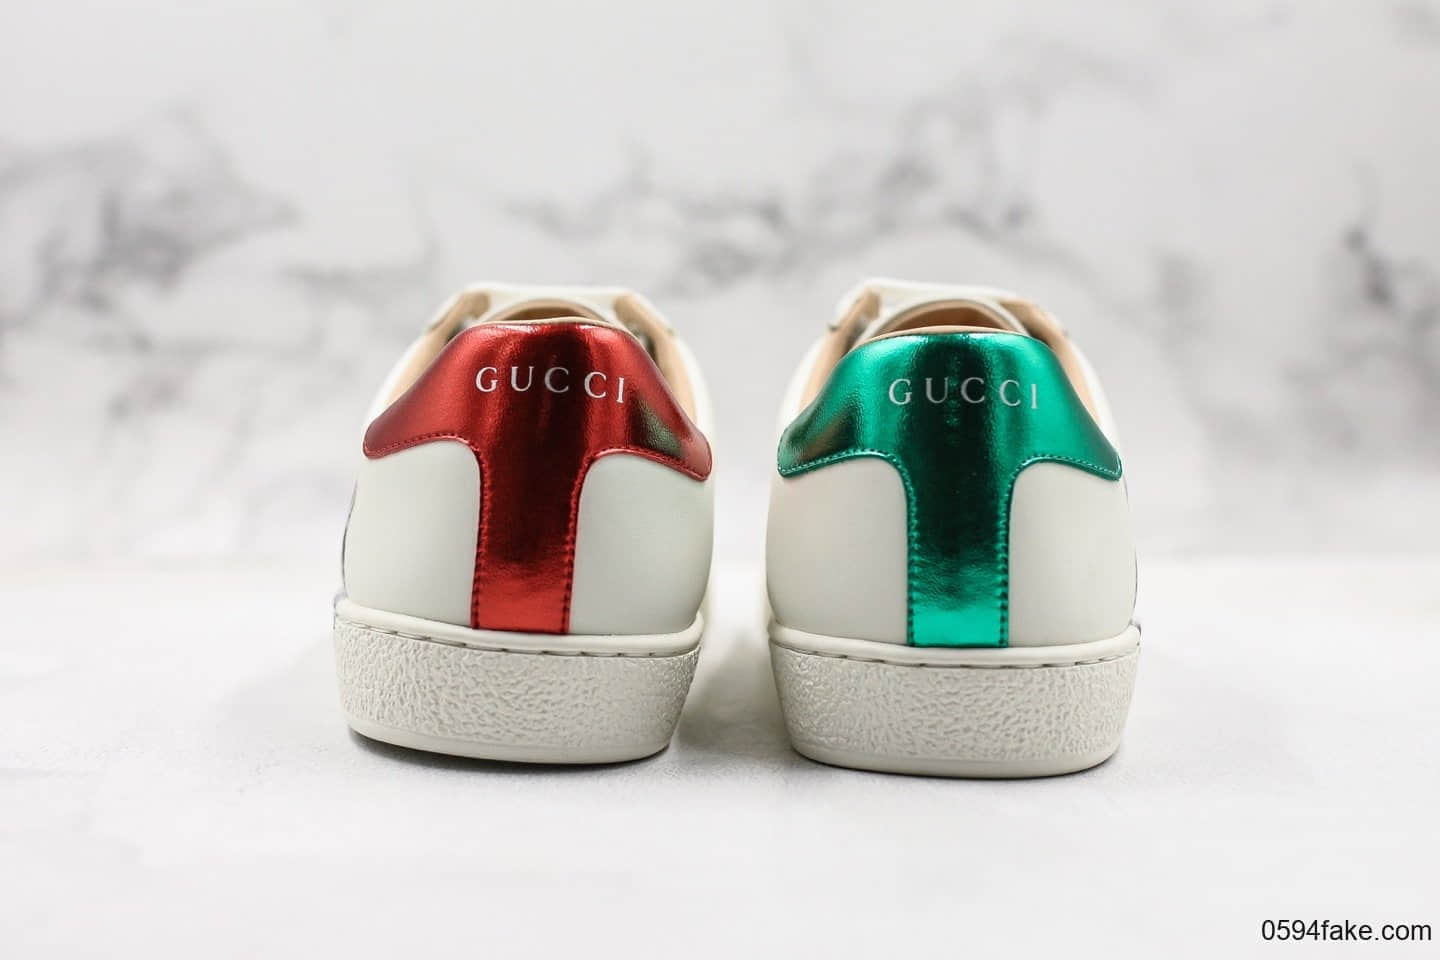 GUCCI小白鞋原装海外正品订单Gucci古驰官方印花小白鞋轻便系列